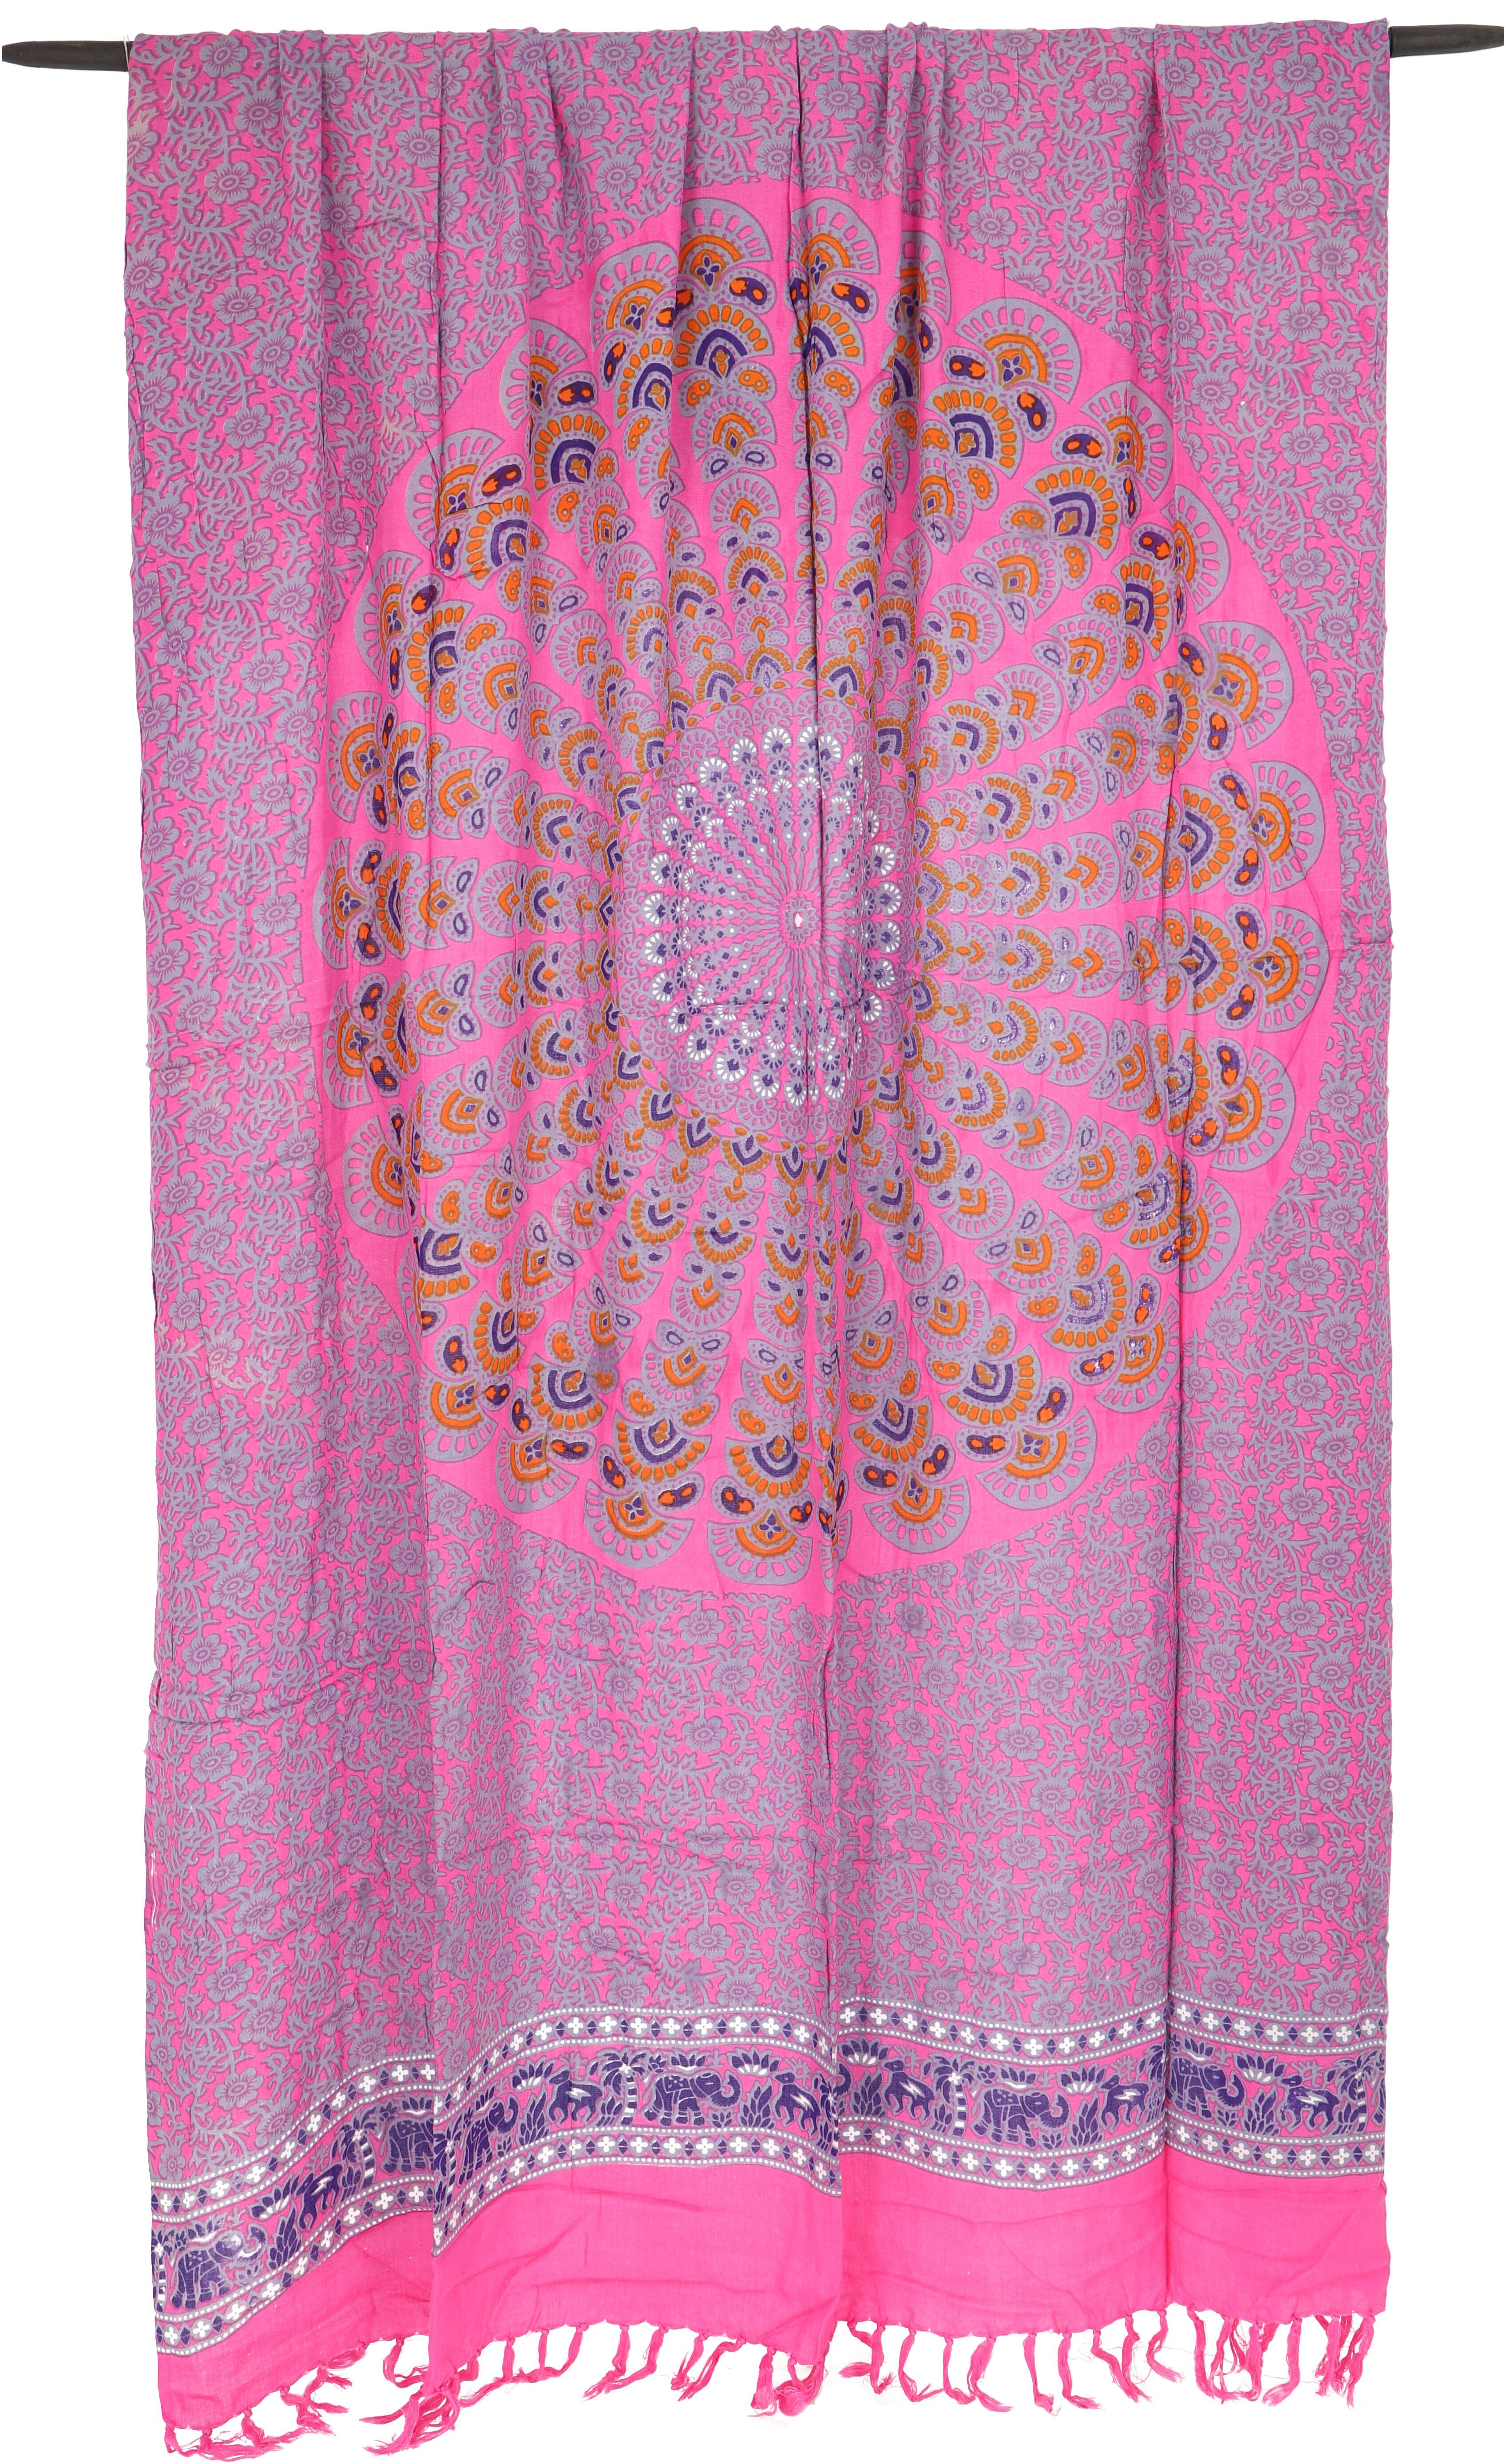 Wandtuch, Sarong, Wickelrock, Sarong Guru-Shop Bali Mandala.. pink/grau